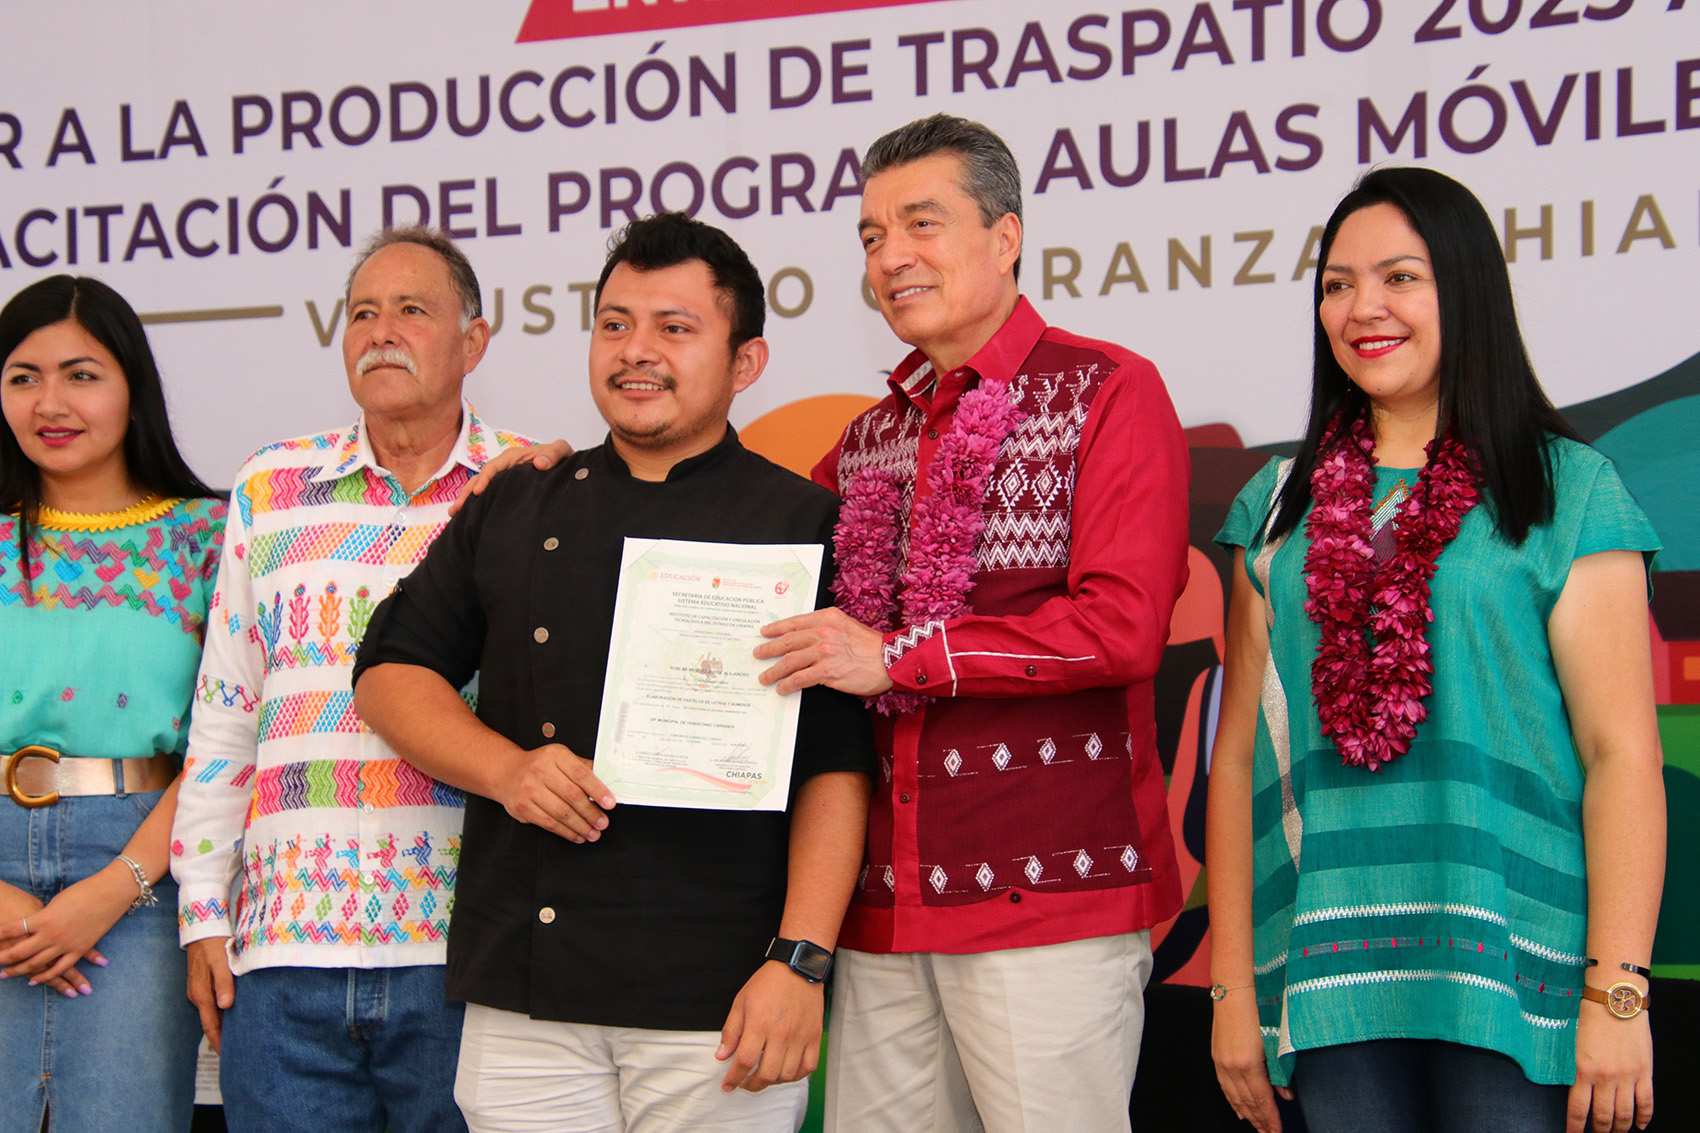 Un hecho histórico el arribo de las Aulas Móviles de  "Estilismo y diseño de imagen" y "Alimentos y bebidas", a Venustiano Carranza, Chiapas